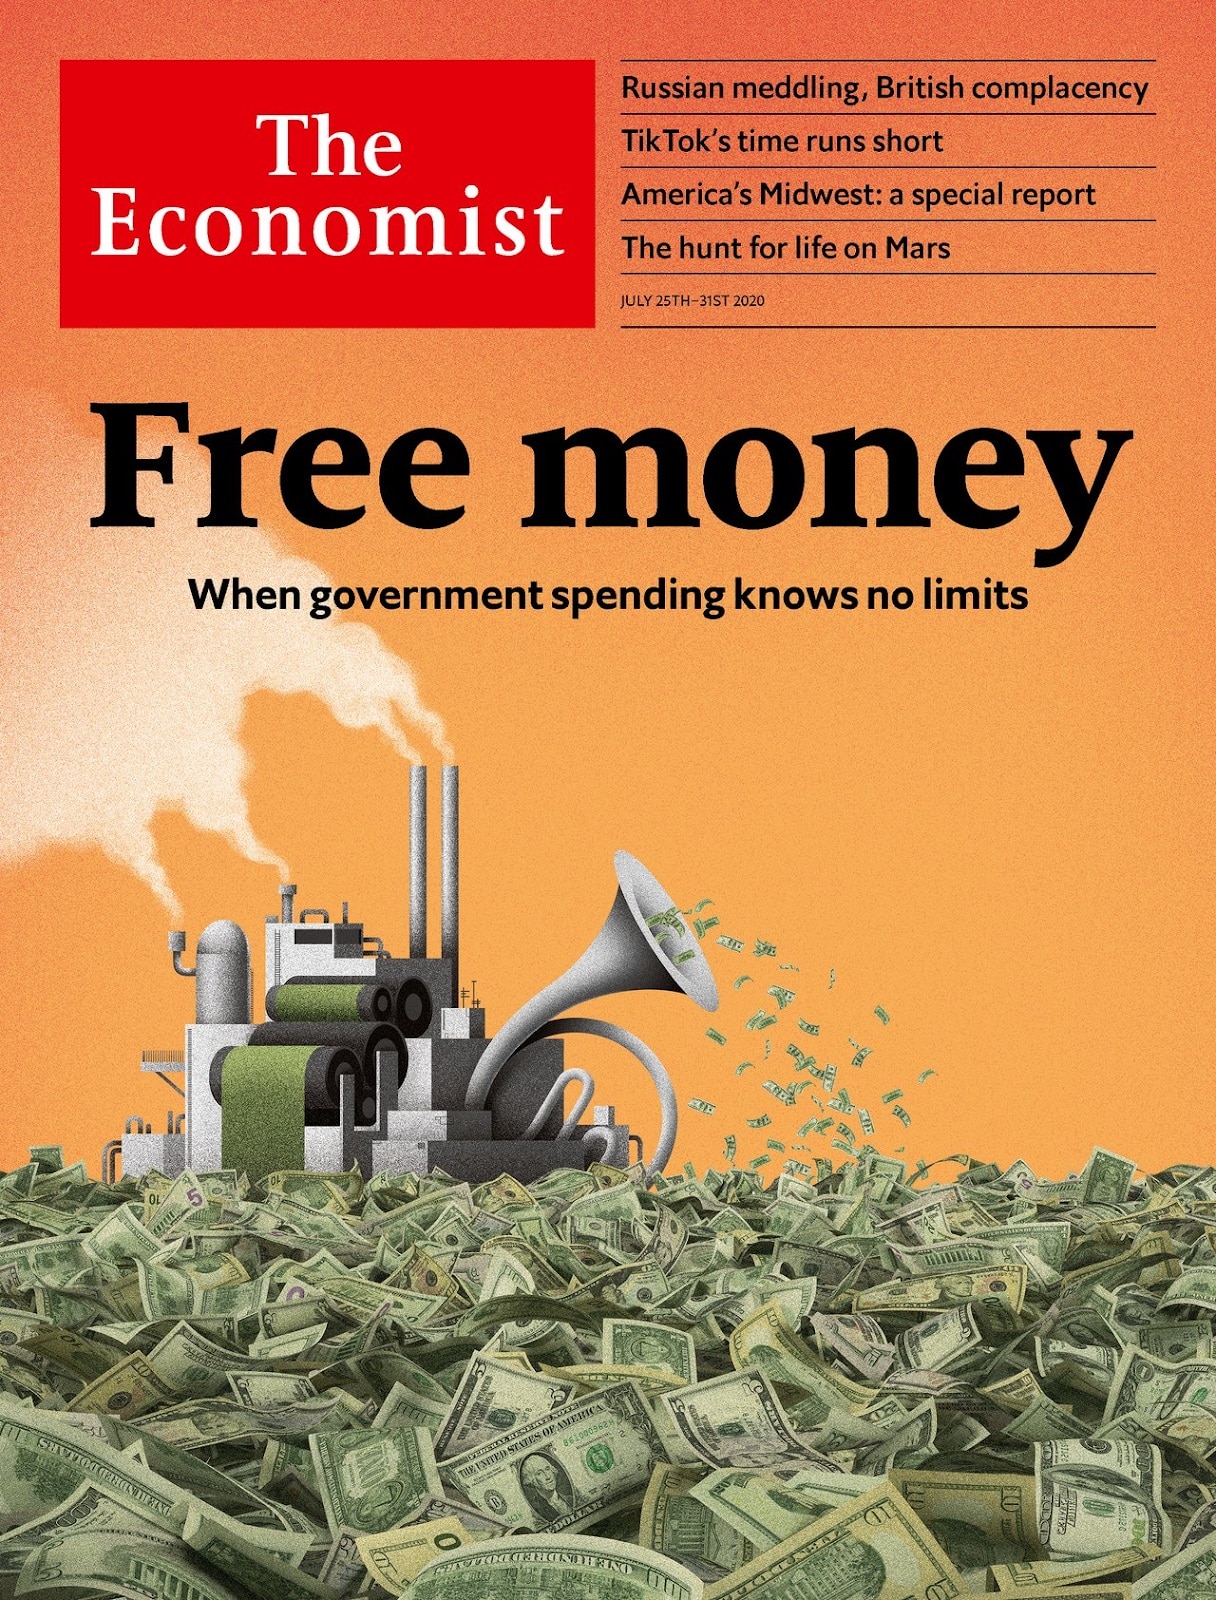 En este momento estás viendo The Economist Free Money La Fed El Regulador Bancario Americano Washington D.C. todos aupando al Bitcoin.